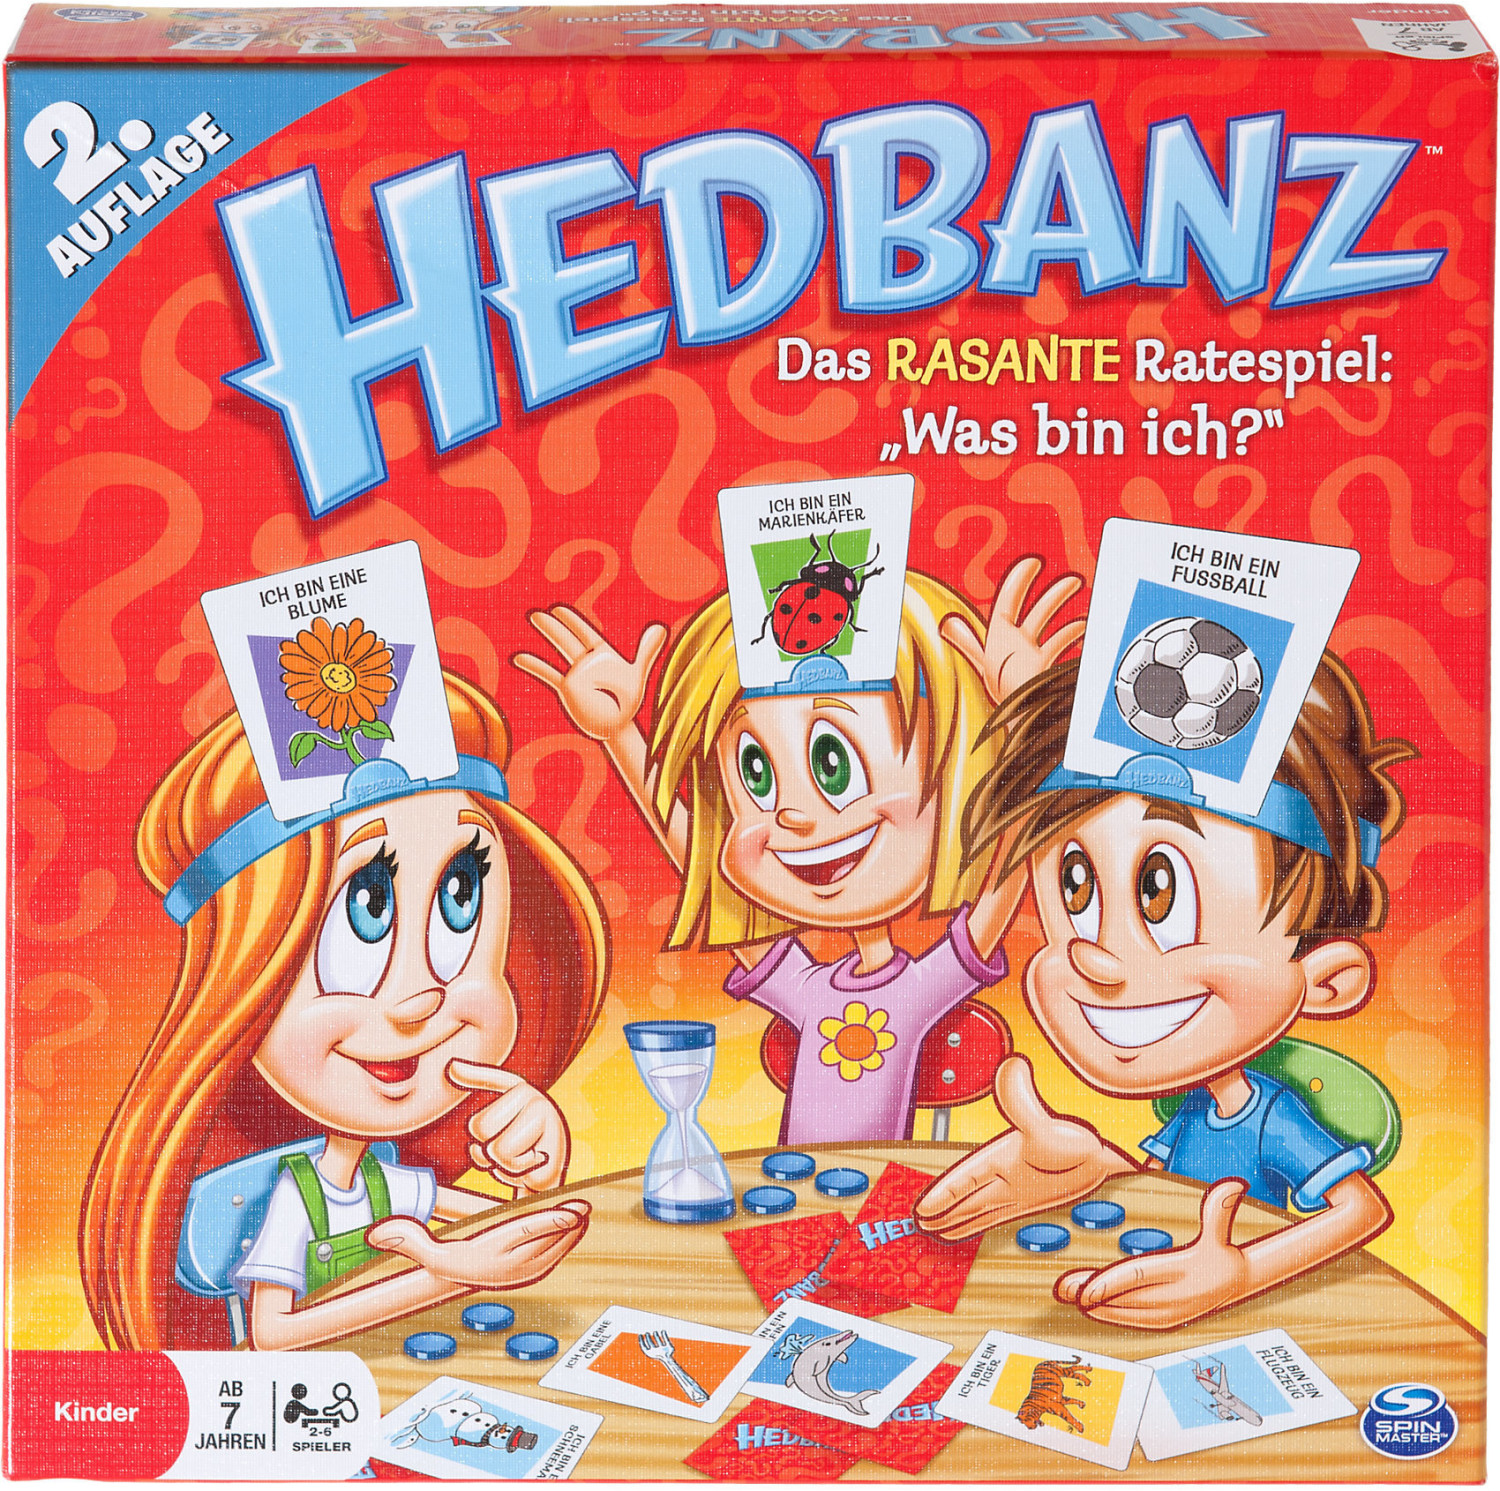 hedbanz-f-r-kids-ab-14-95-preisvergleich-bei-idealo-de